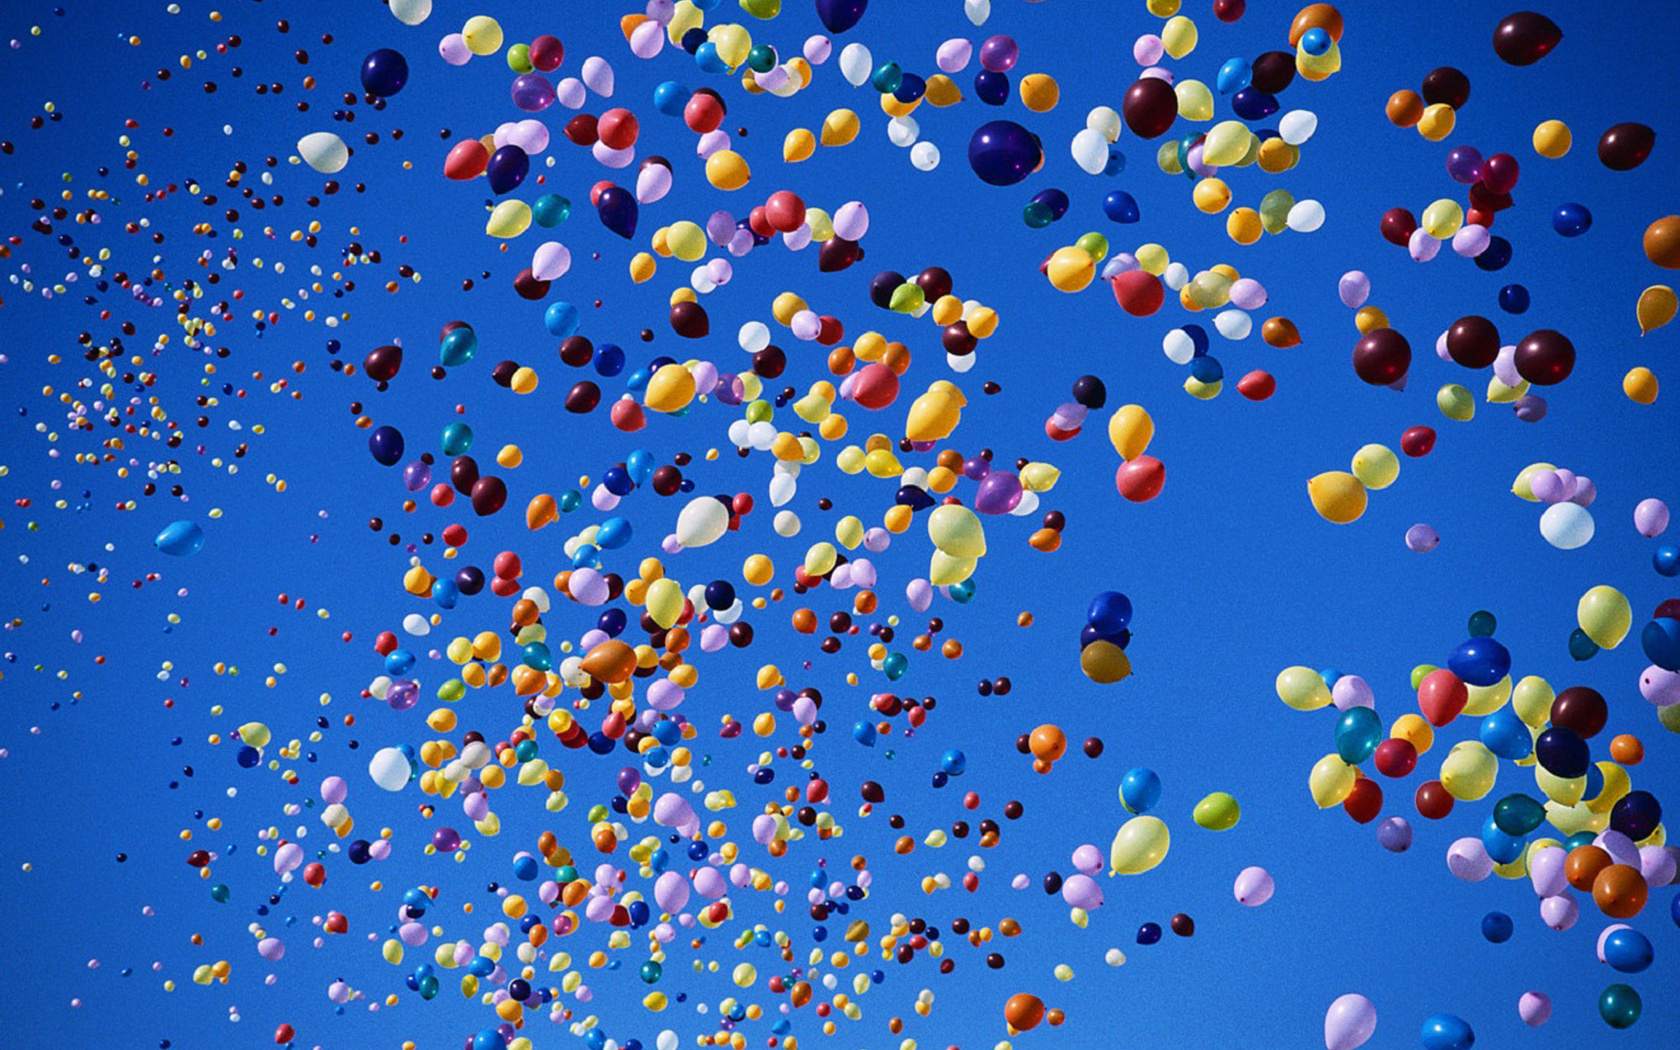 Выпускники Астаны отказались от неэкологичного запуска воздушных шаров